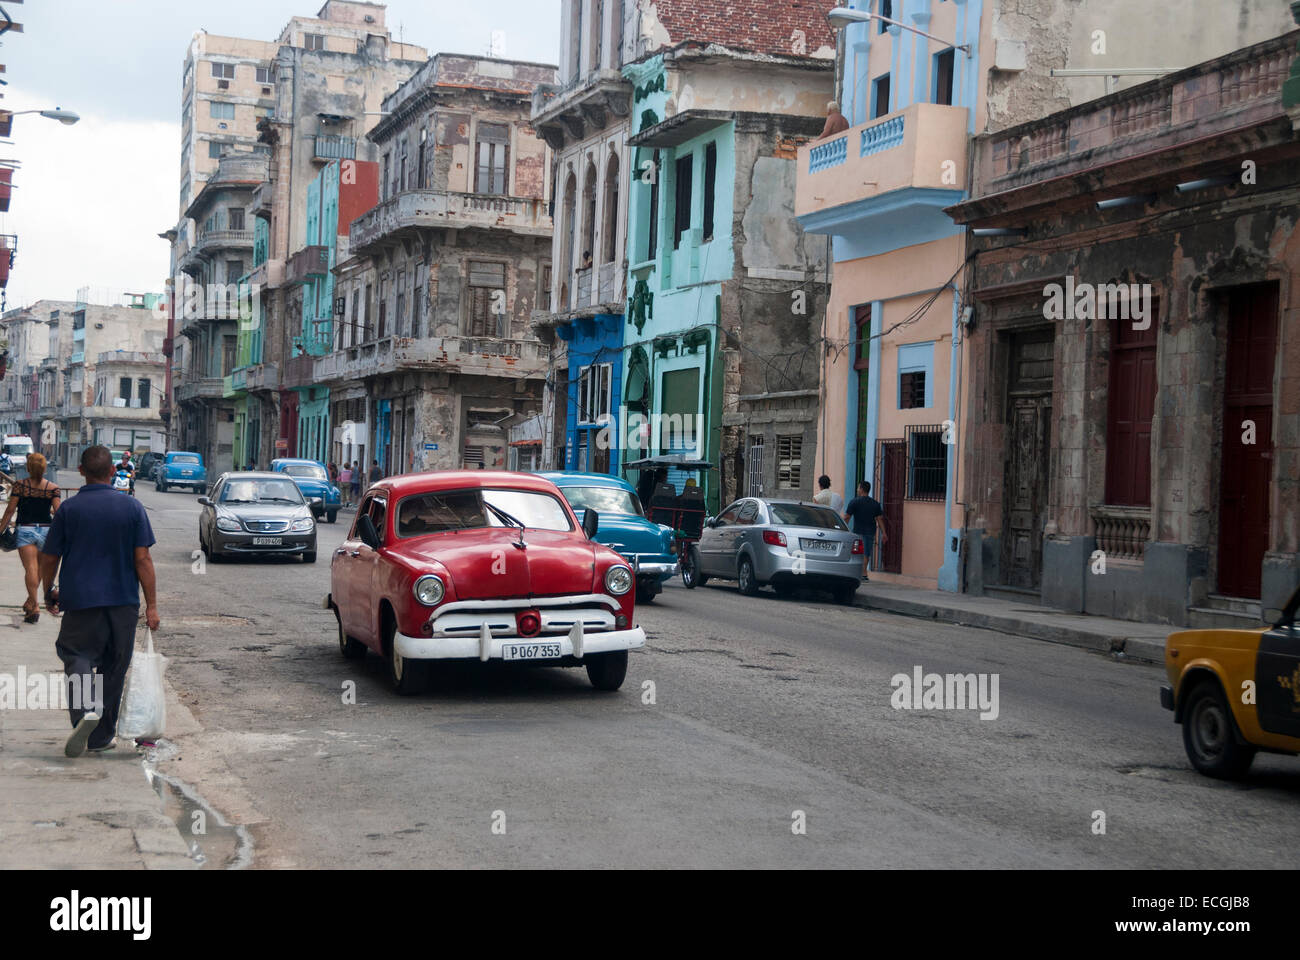 Verfallene Gebäude und amerikanische Oldtimer verwendet, da Taxis ein alltäglicher Anblick in der zentralen Stadtteil von Havanna sind Stockfoto